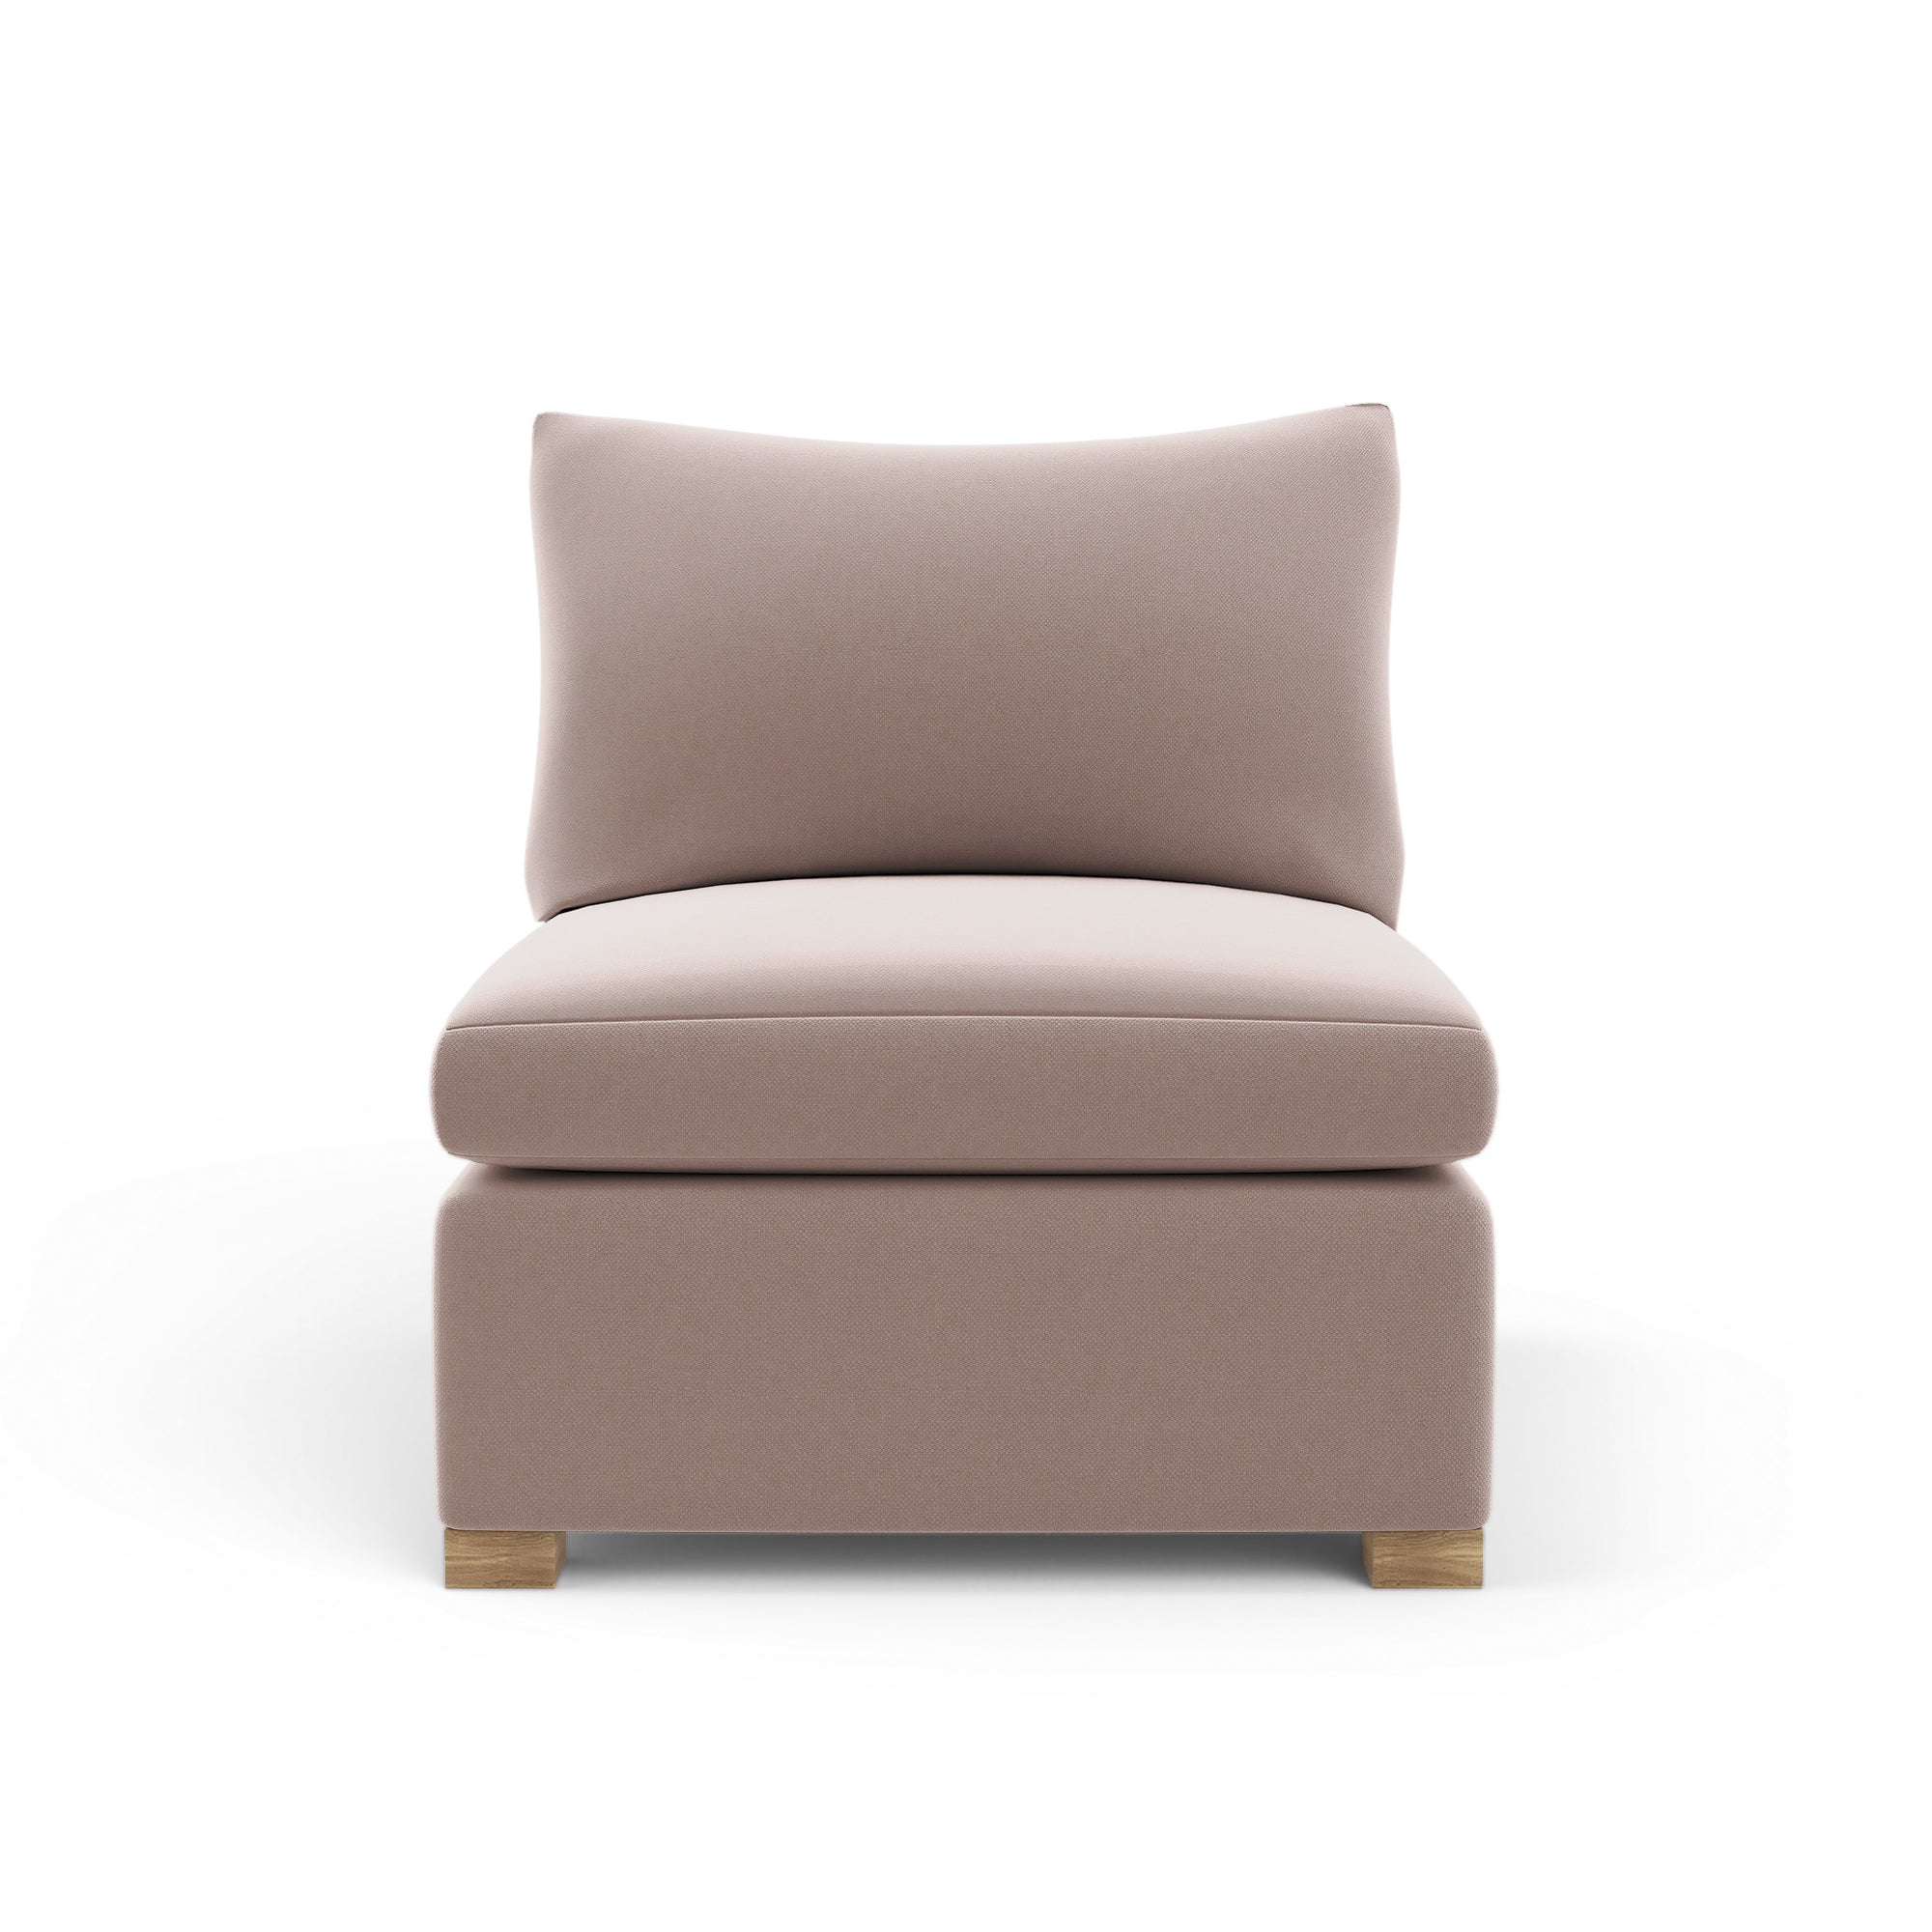 Evans Armless Chair - Blush Plush Velvet